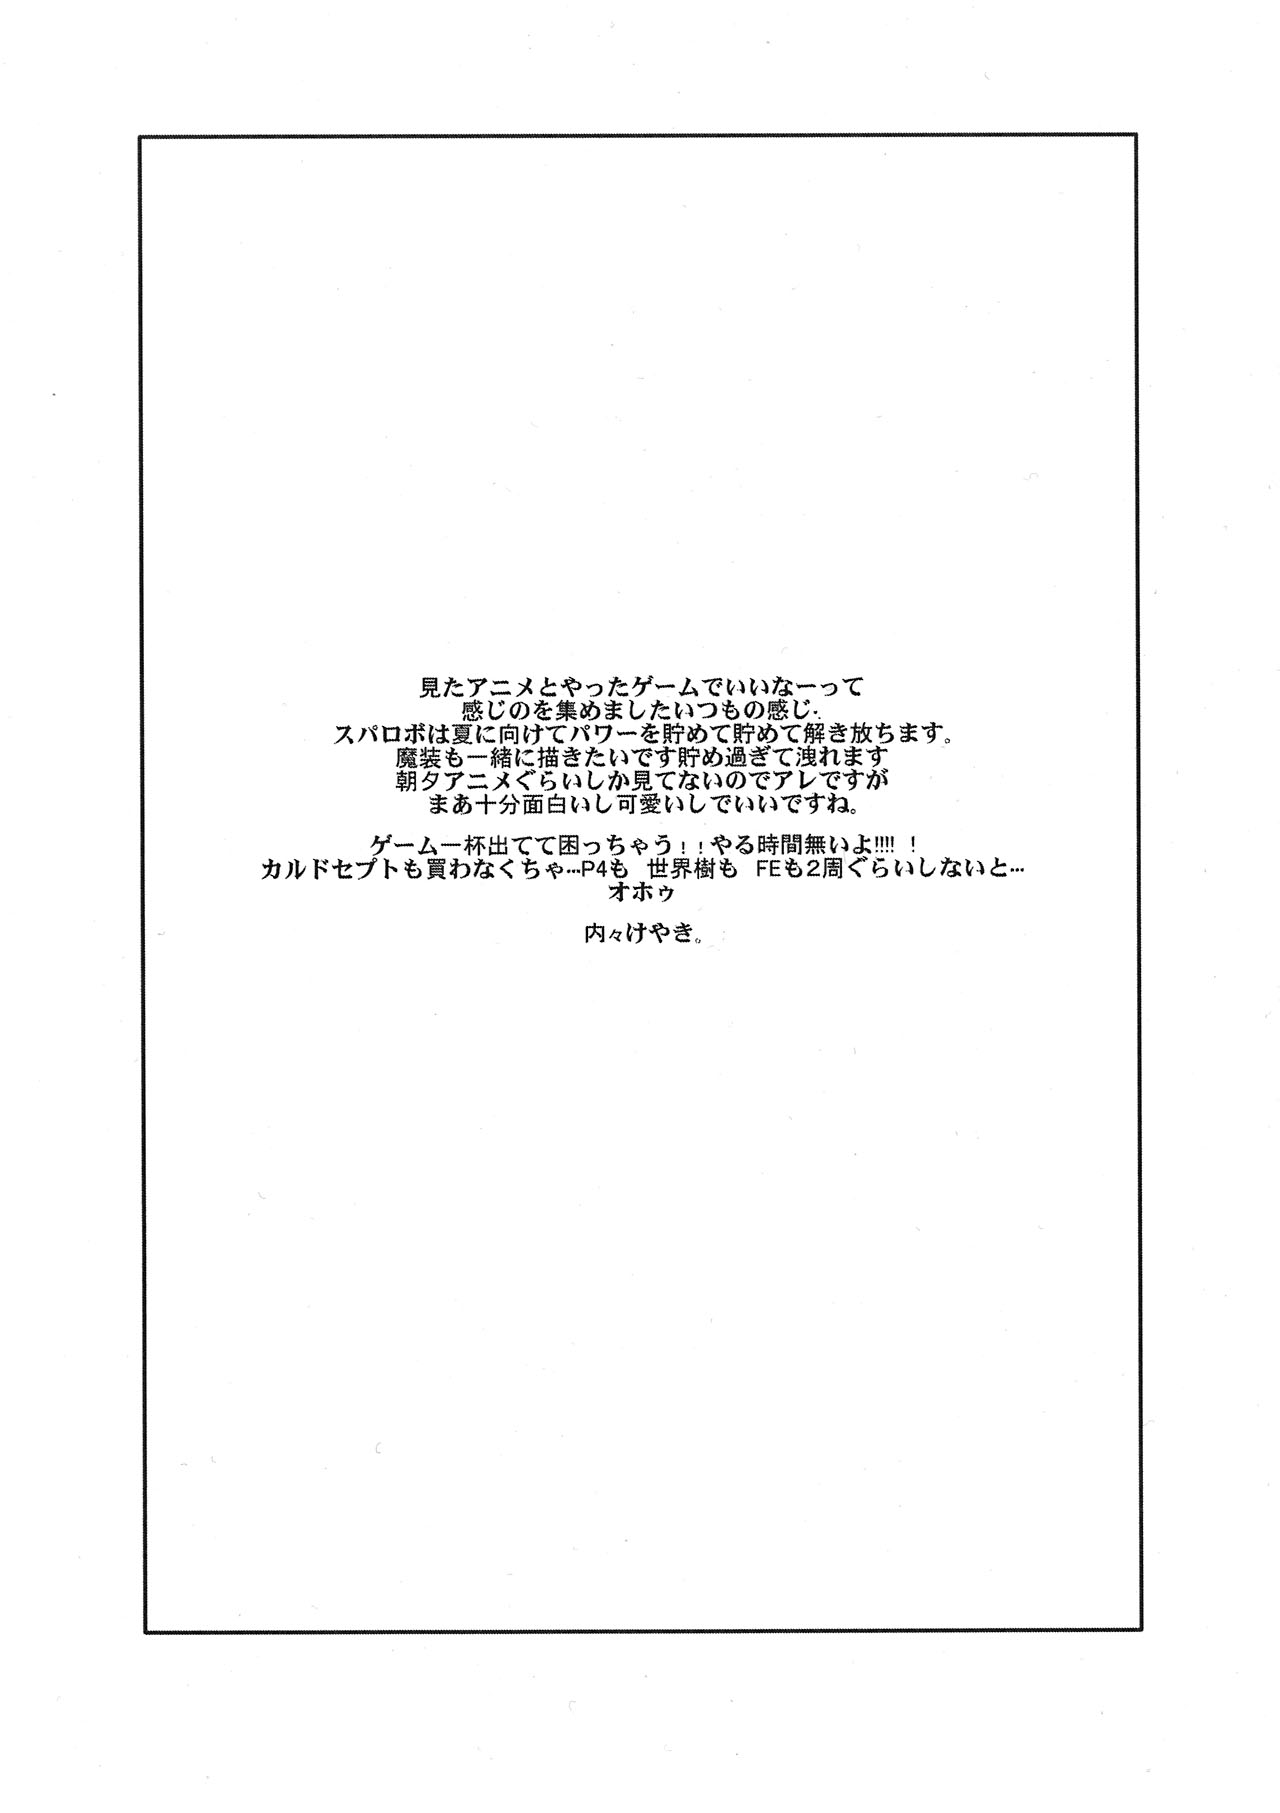 (COMIC1☆6) [ブロンコ一人旅 (内々けやき)] 春アニメのナイスキャラと夏に向けてのこんな感じの描きたいコピー誌 (よろず)